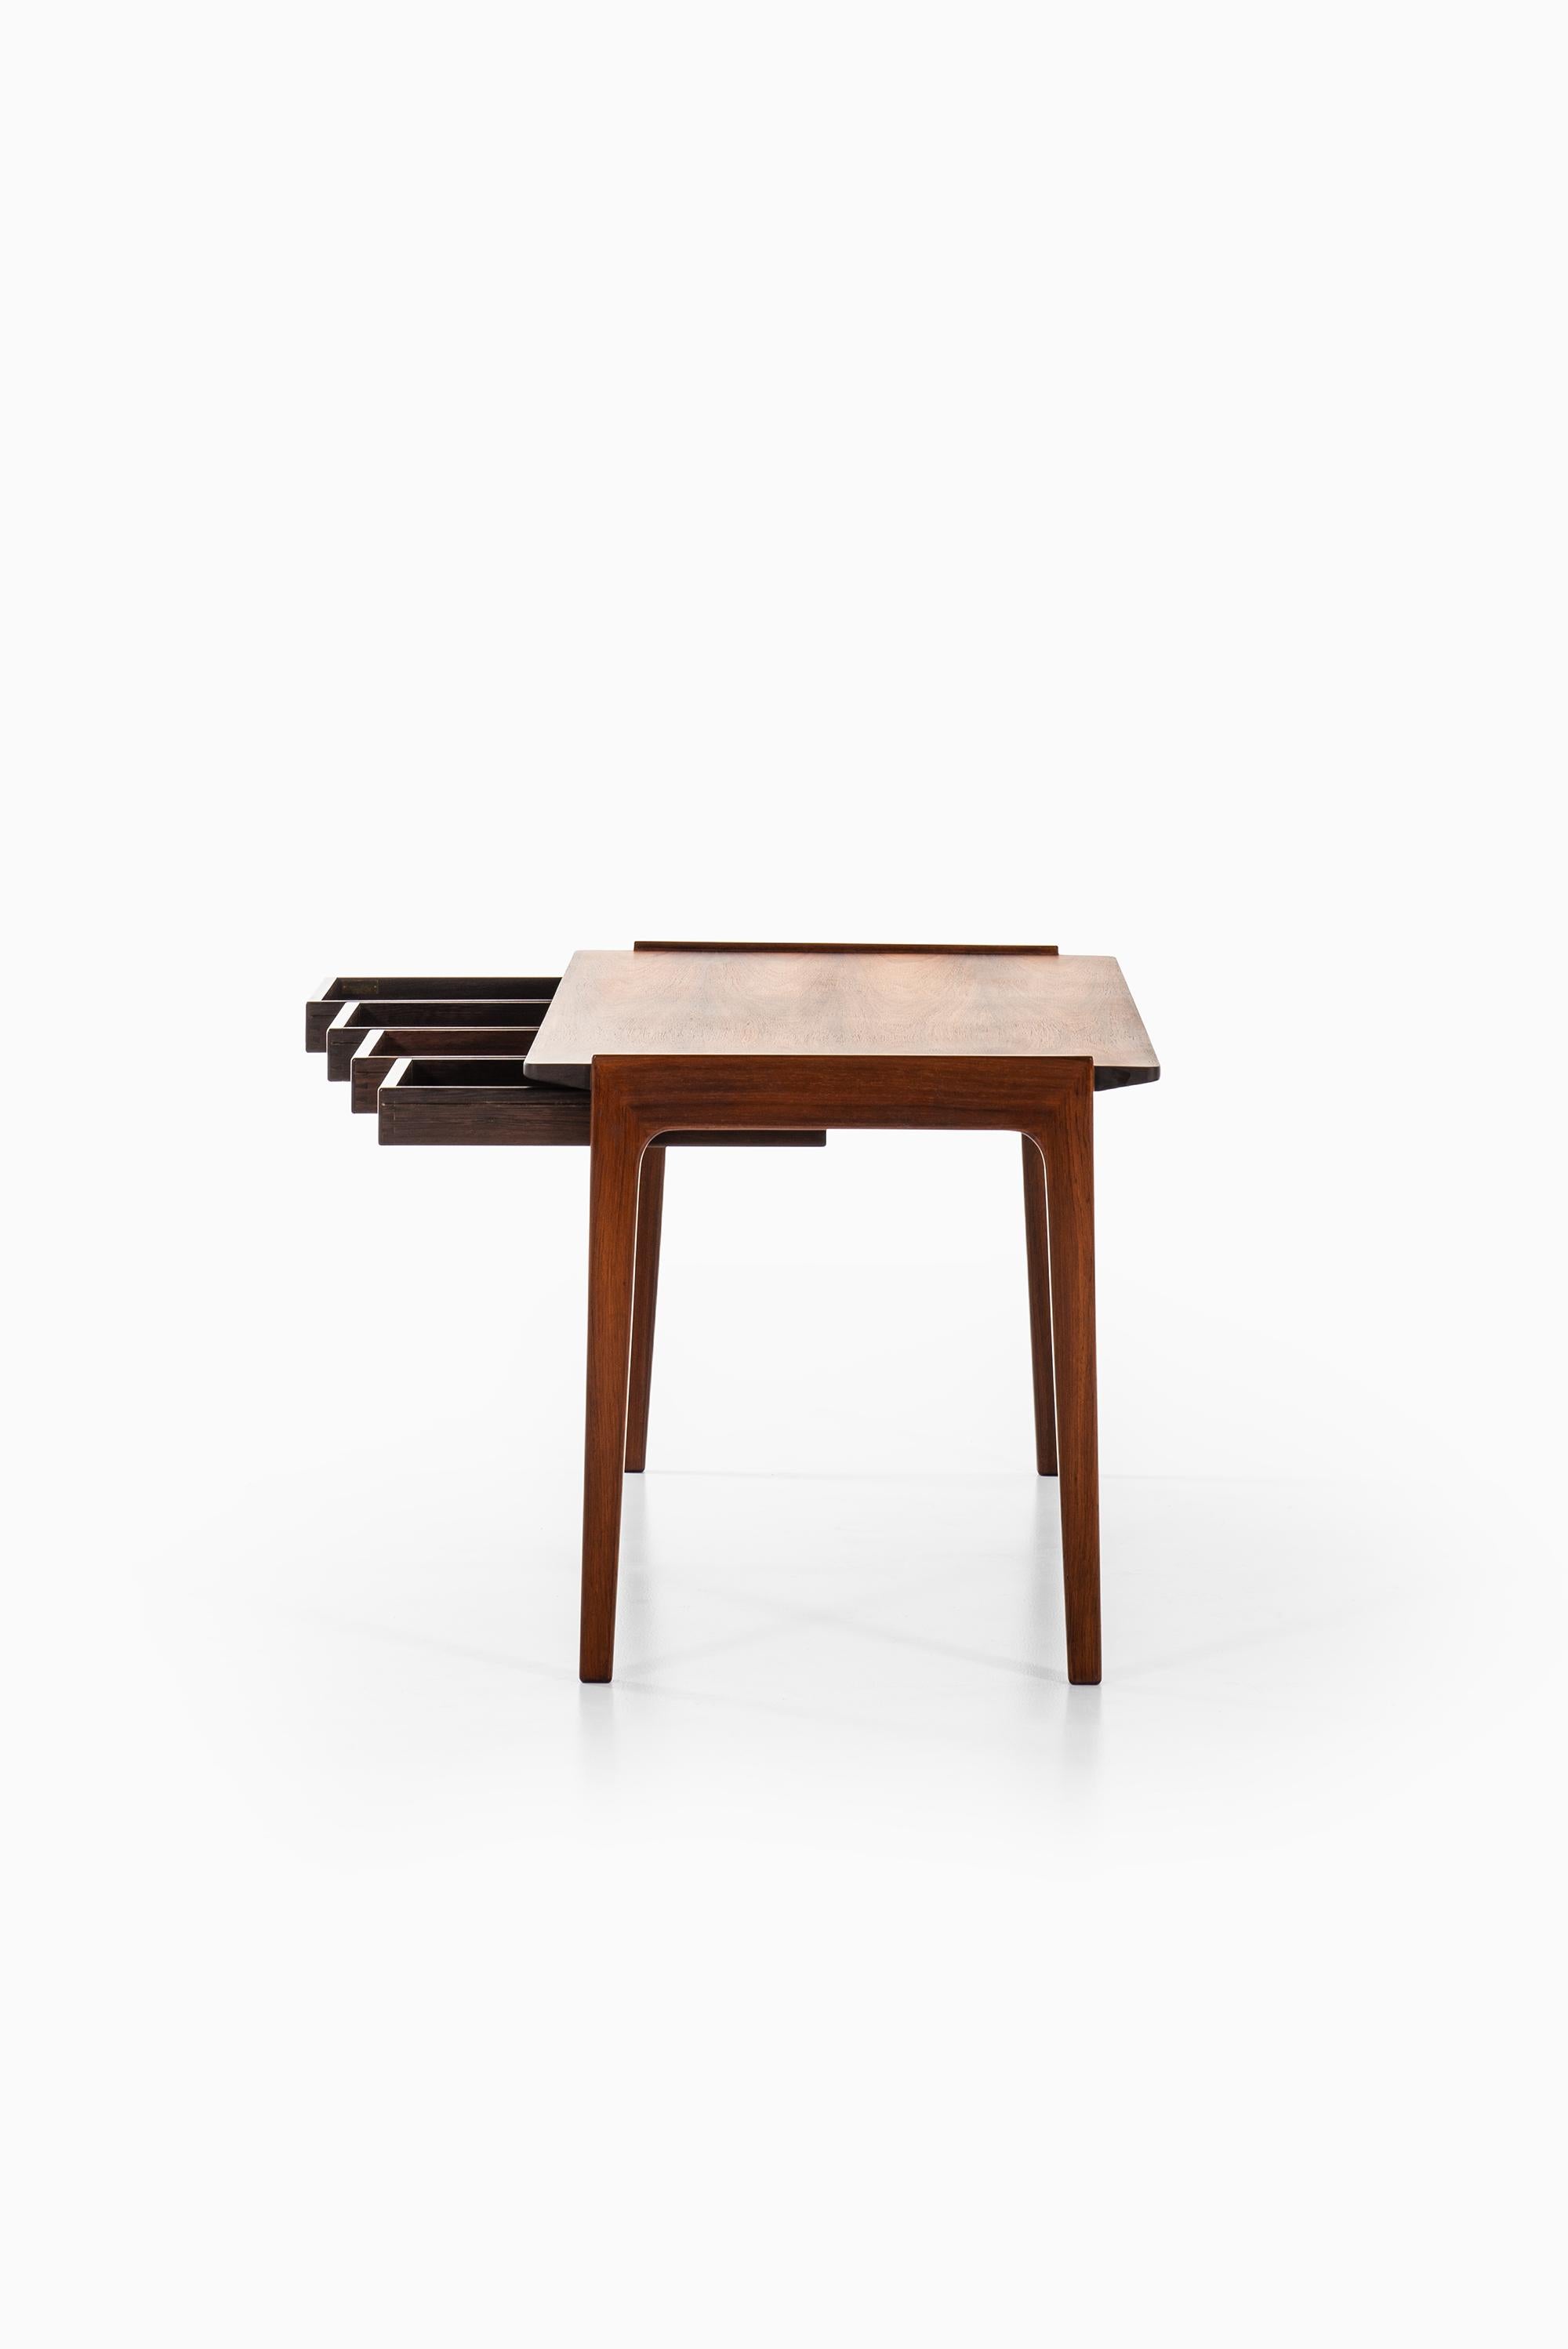 Tove & Edvard Kindt-Larsen Desk by Thorald Madsens Snedkeri in Denmark For Sale 2